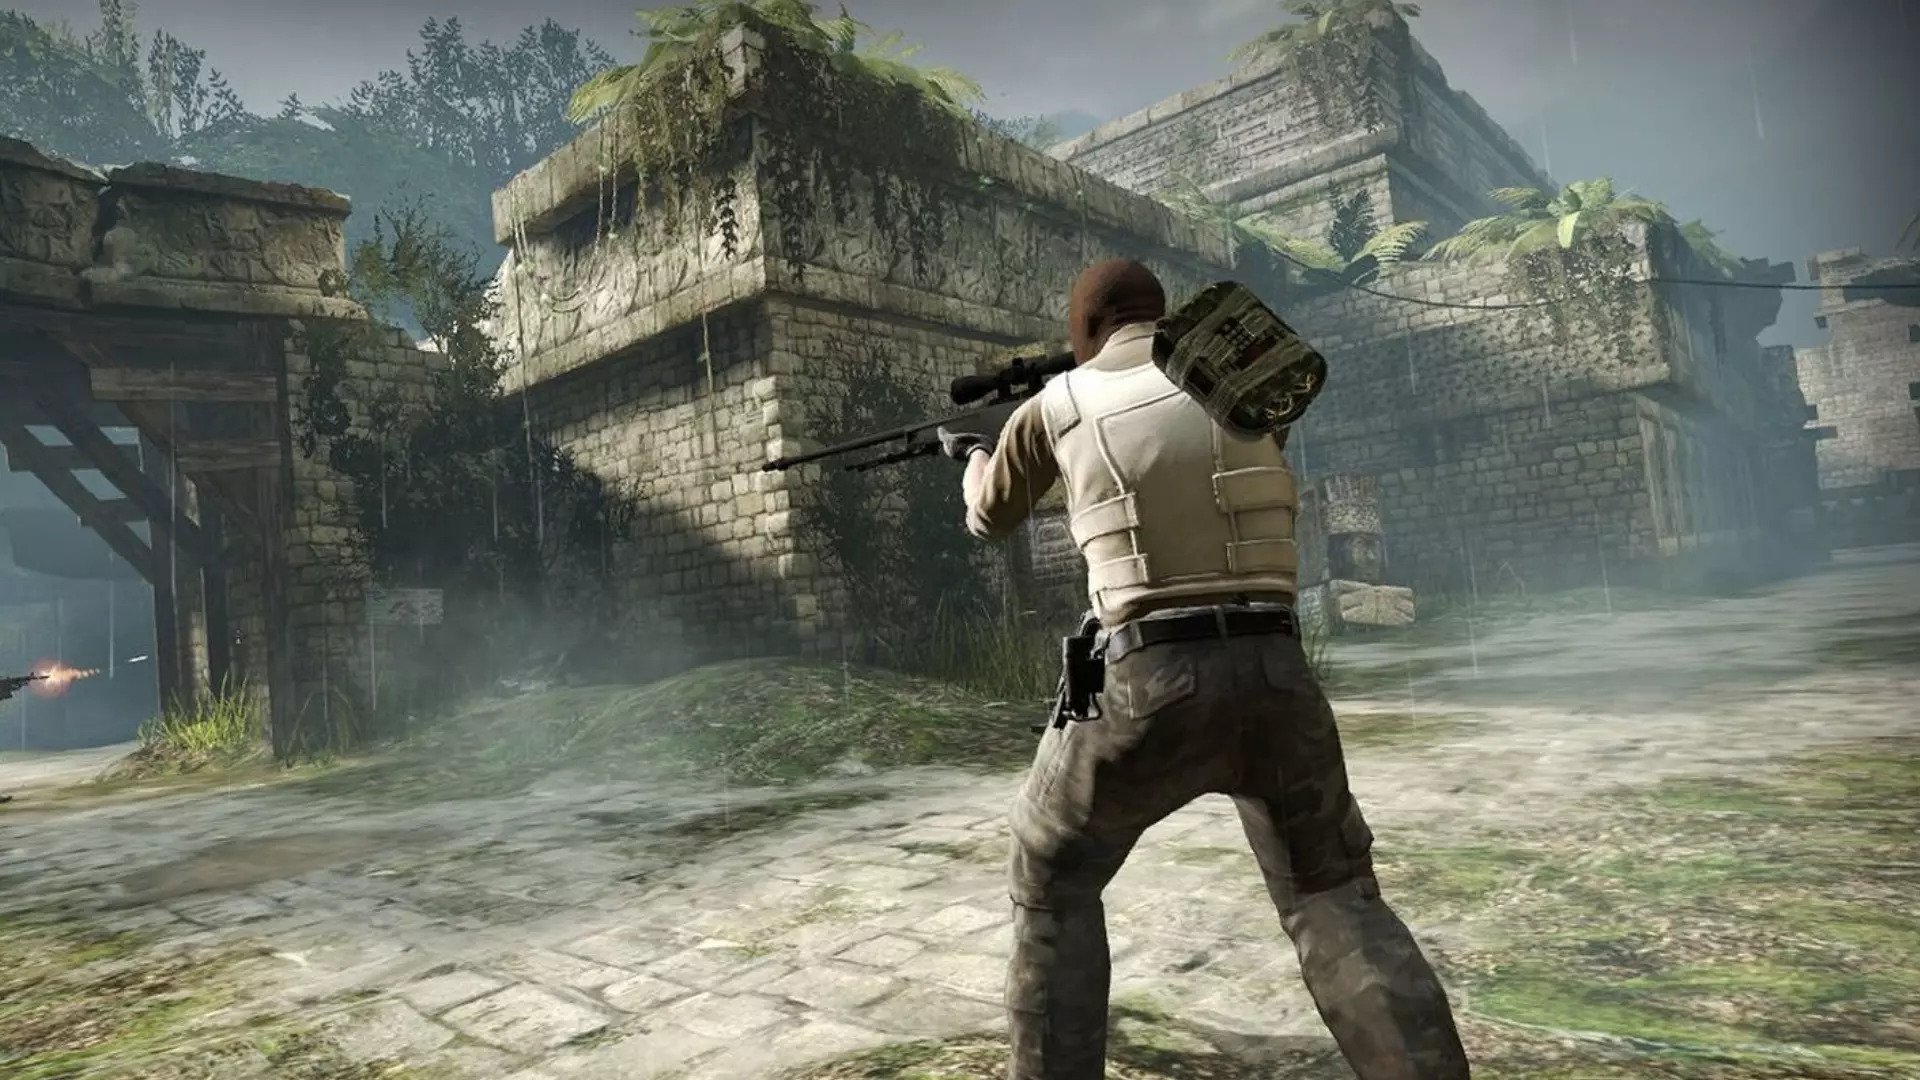 Un soldat vise leur arme en transportant la bombe dans un ancien temple de type aztèque à Counter-Strike